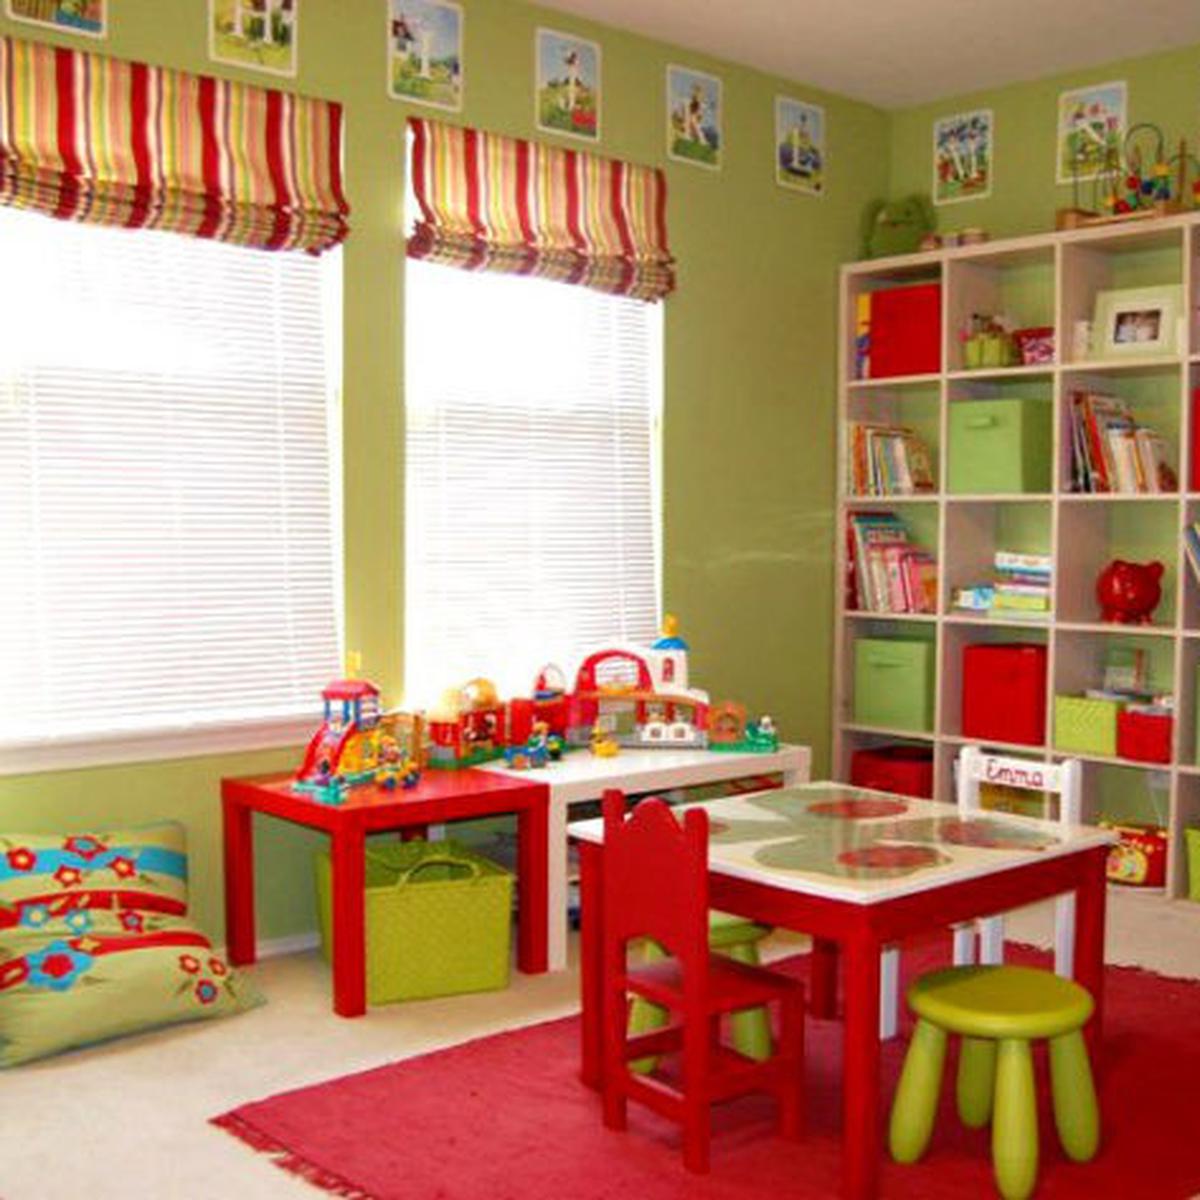 Cómo implementar un cuarto de juegos para niños dentro de la casa? | CASA-Y-MAS  | EL COMERCIO PERÚ